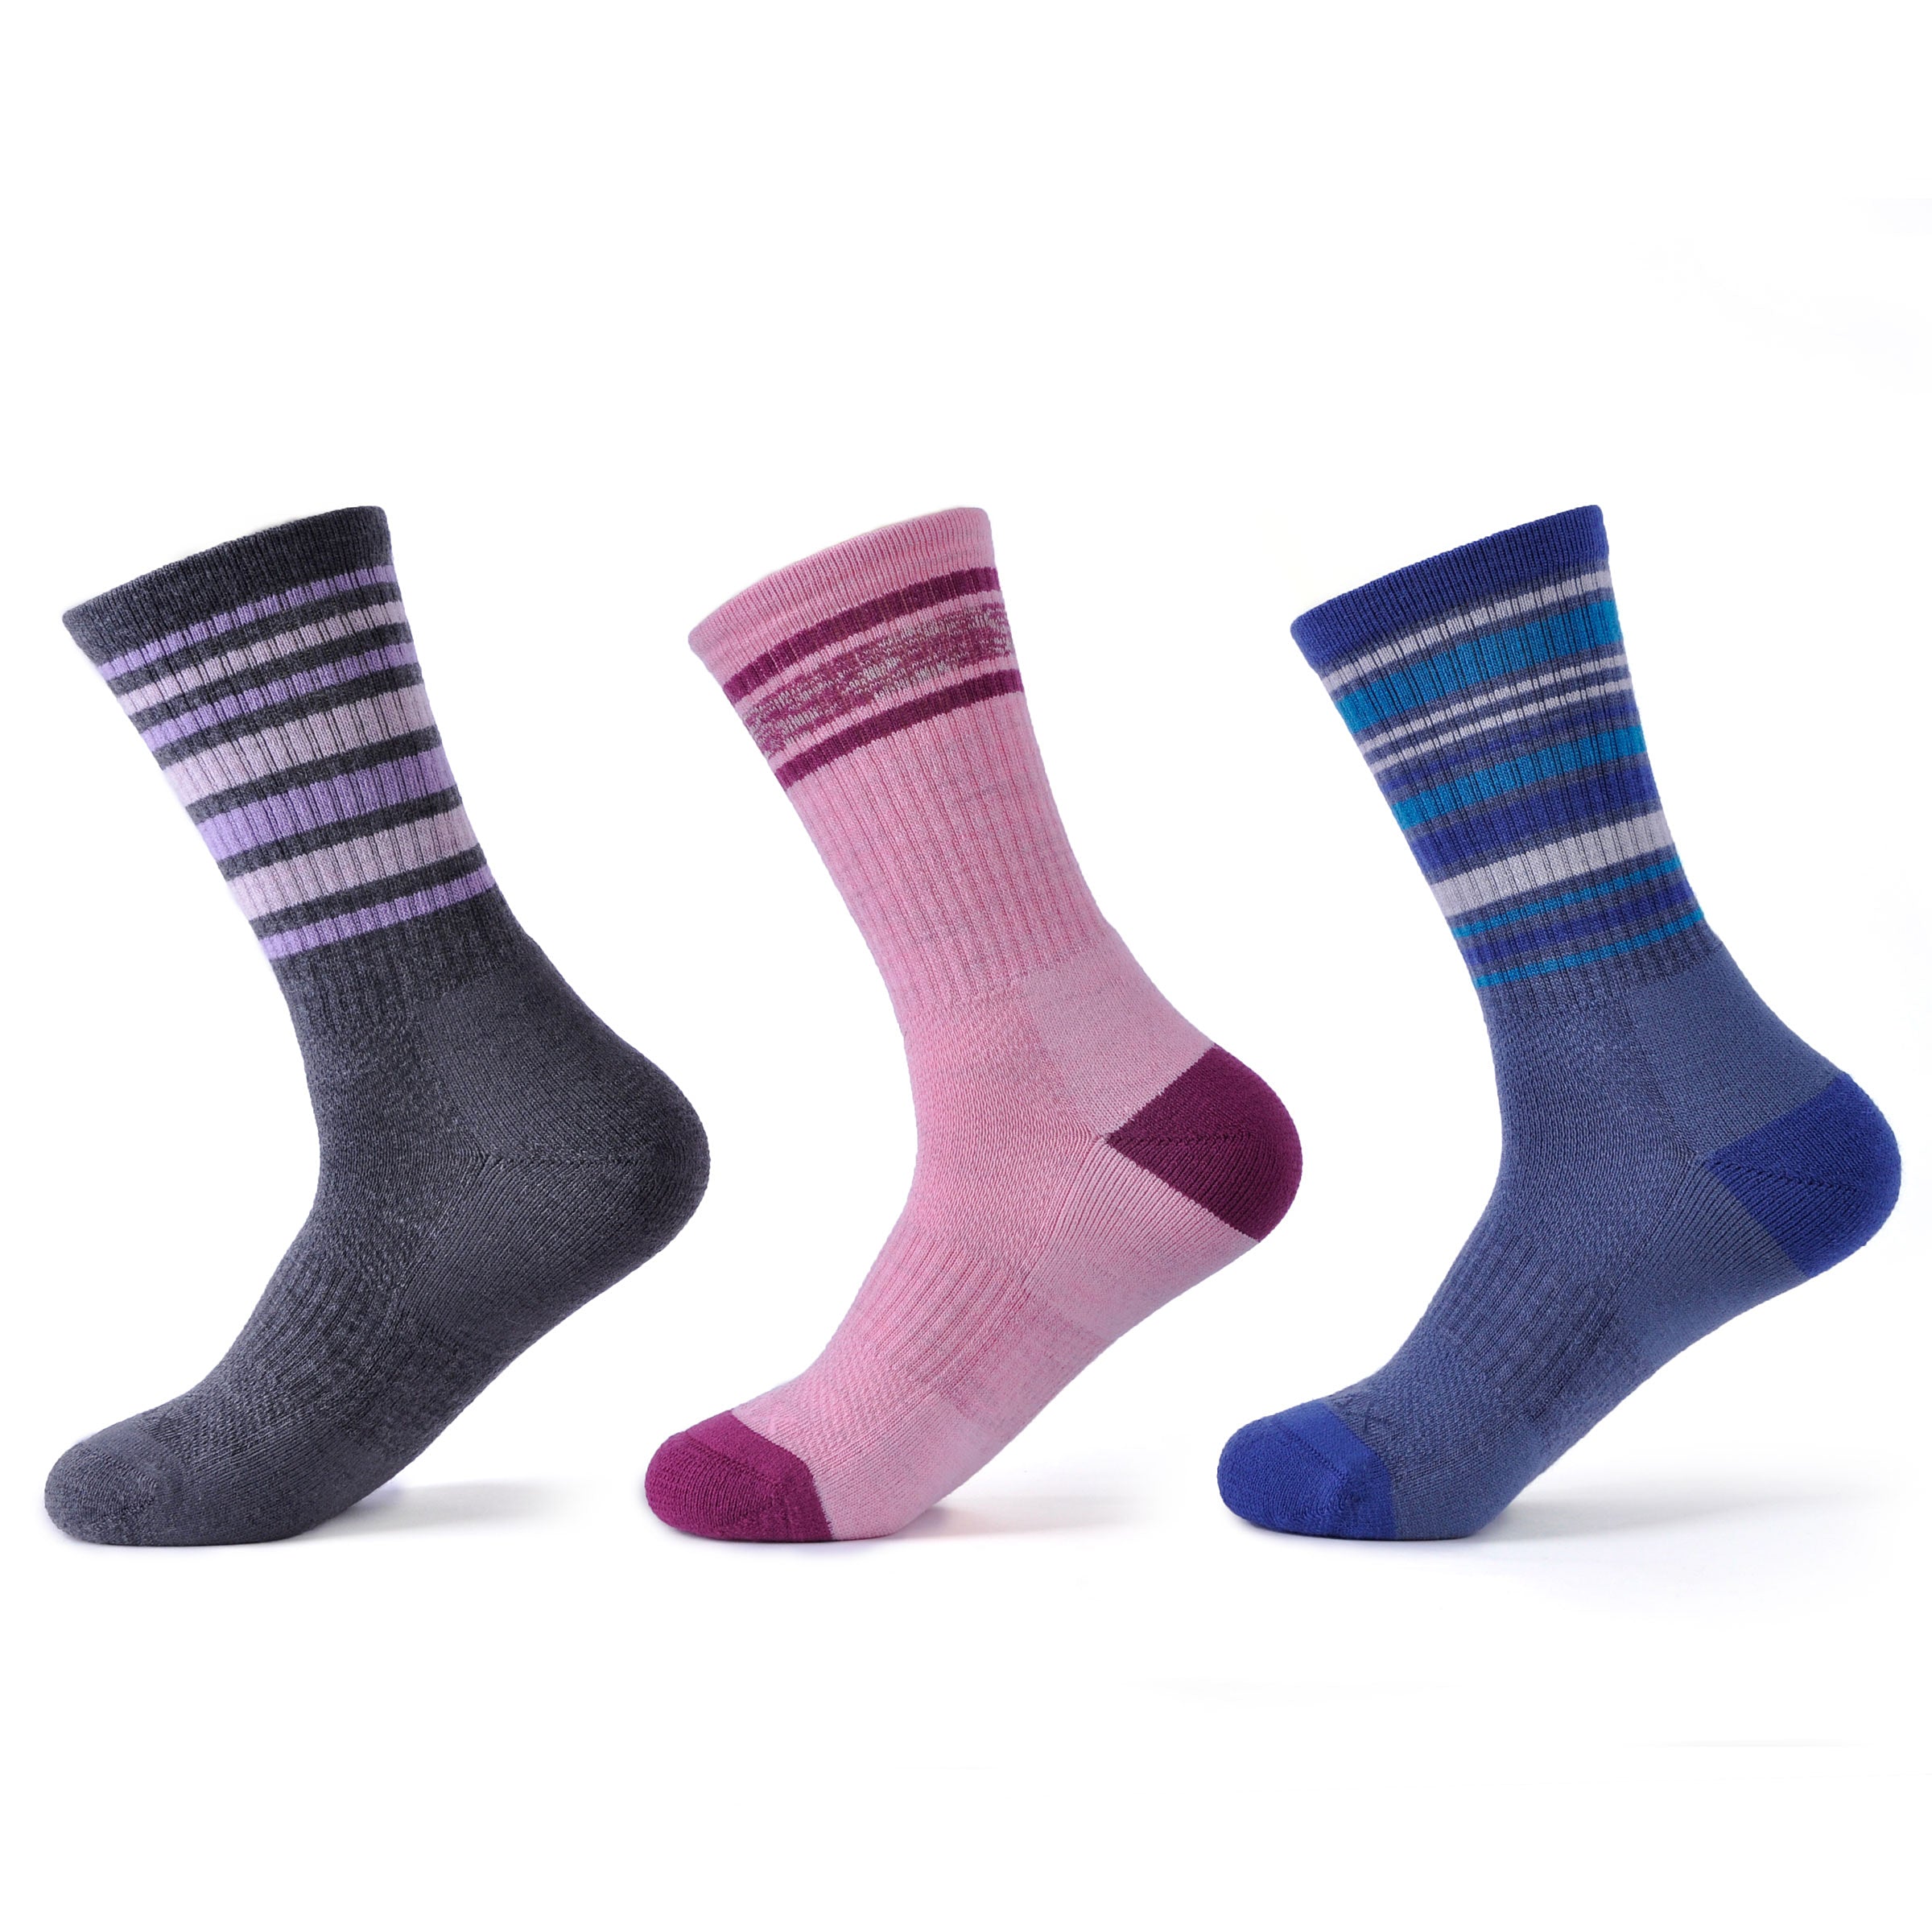 SOLAX Merino Wool Walking Socks